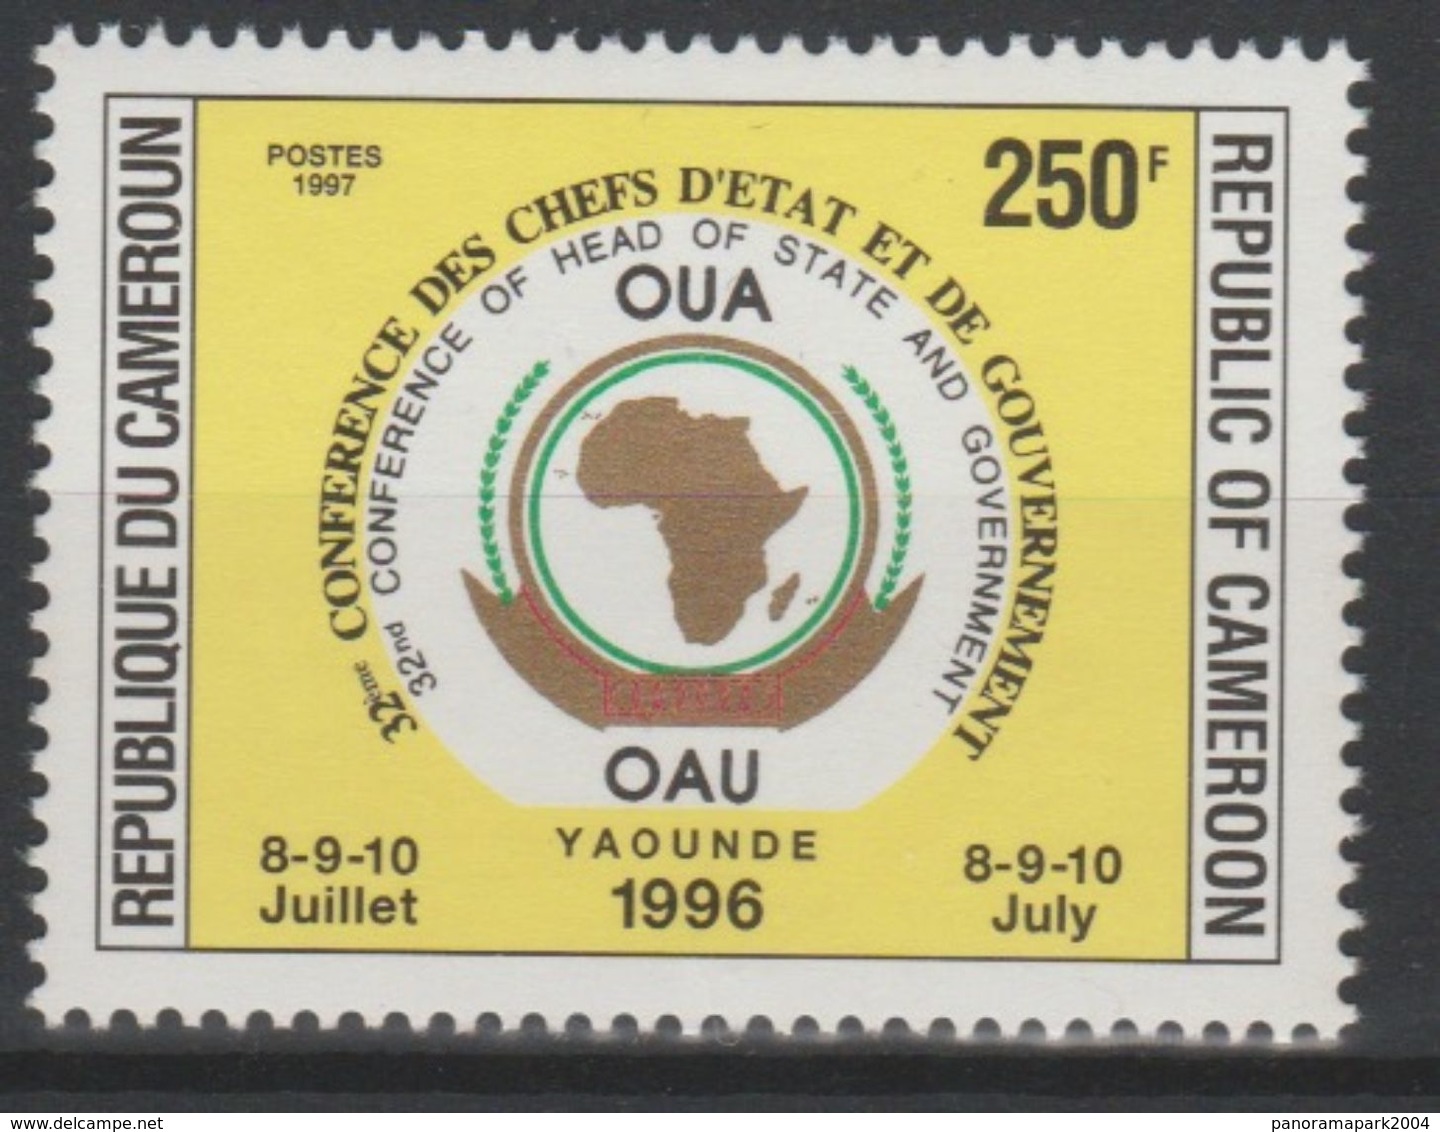 Cameroun Cameroon Kamerun 1997 250F Mi. 1223 OAU OUA Map Landkarte Carte Conférence Chefs D'Etat 8-9-10 Juillet - Camerún (1960-...)